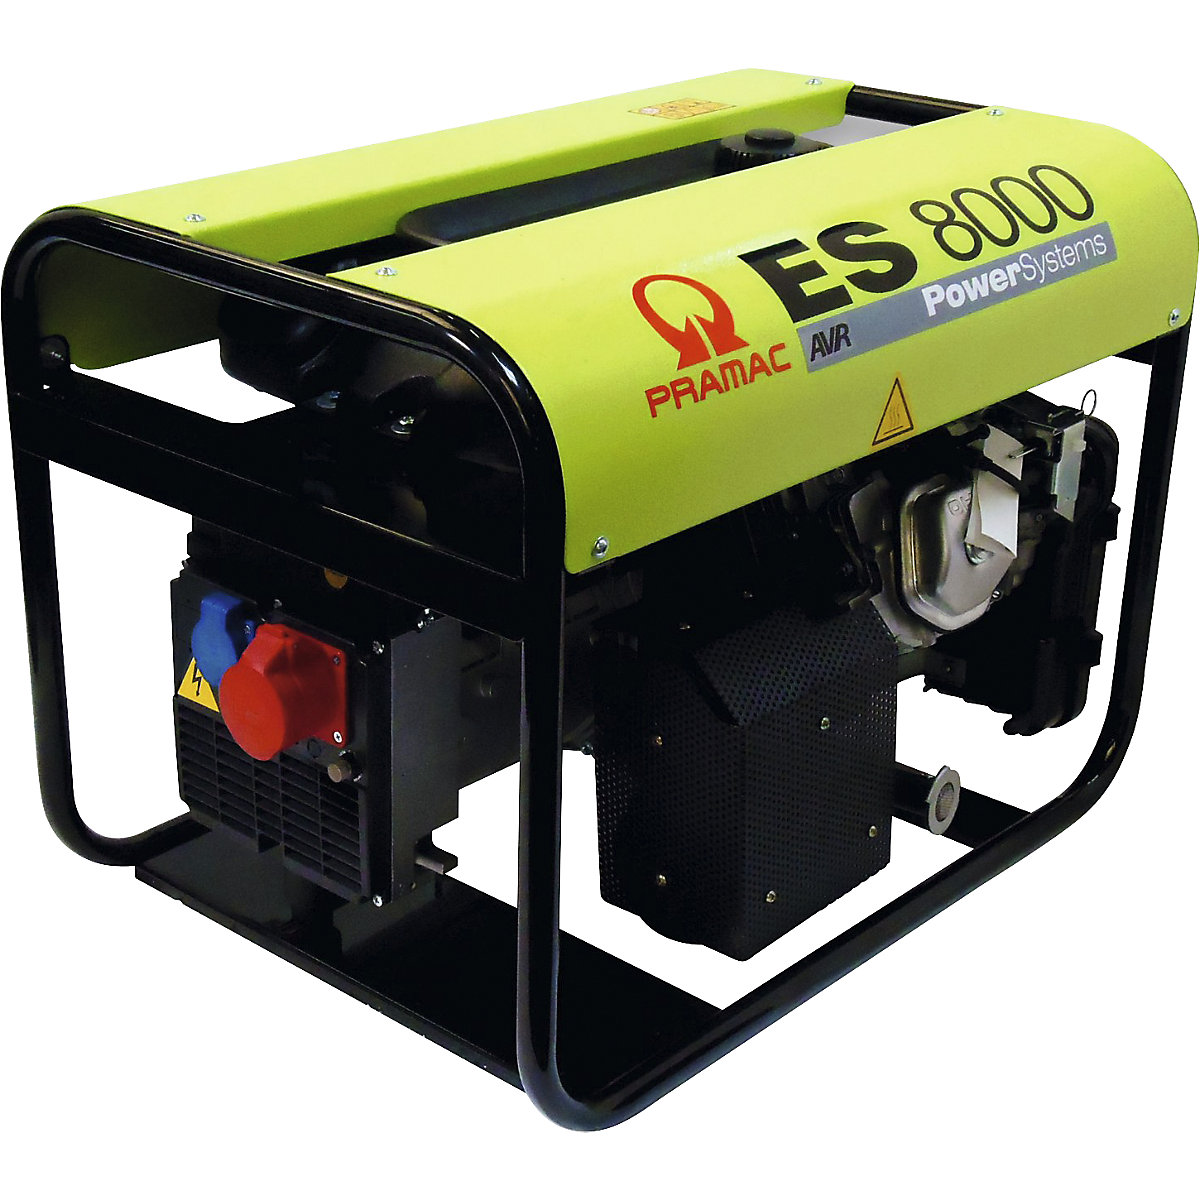 Agregat serije ES - bencinski, 400/230V - Pramac